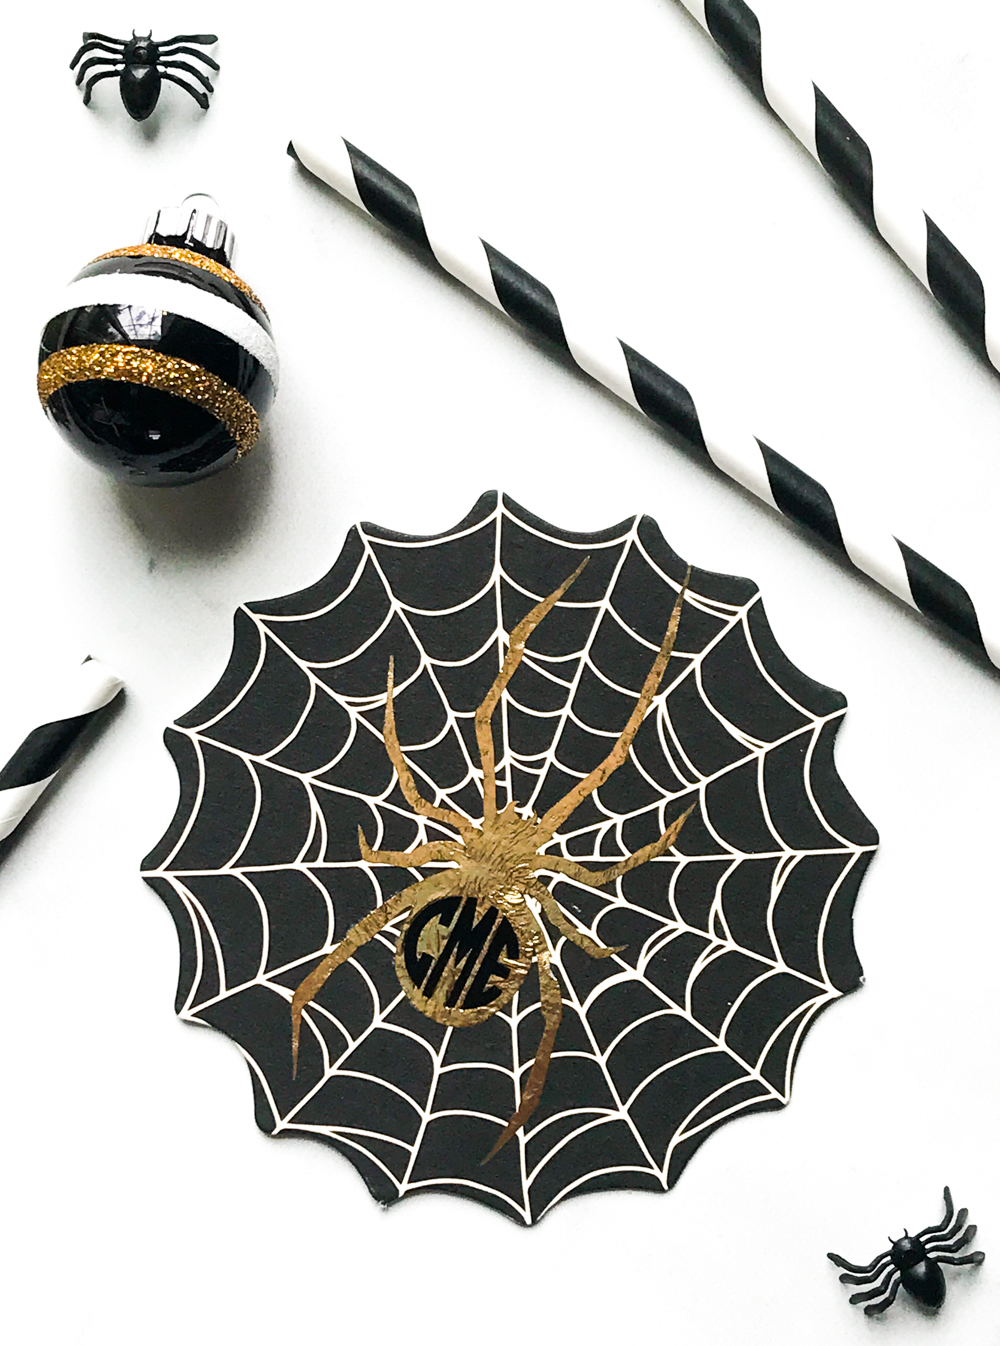 Gold Spider Coaster Halloween Decor